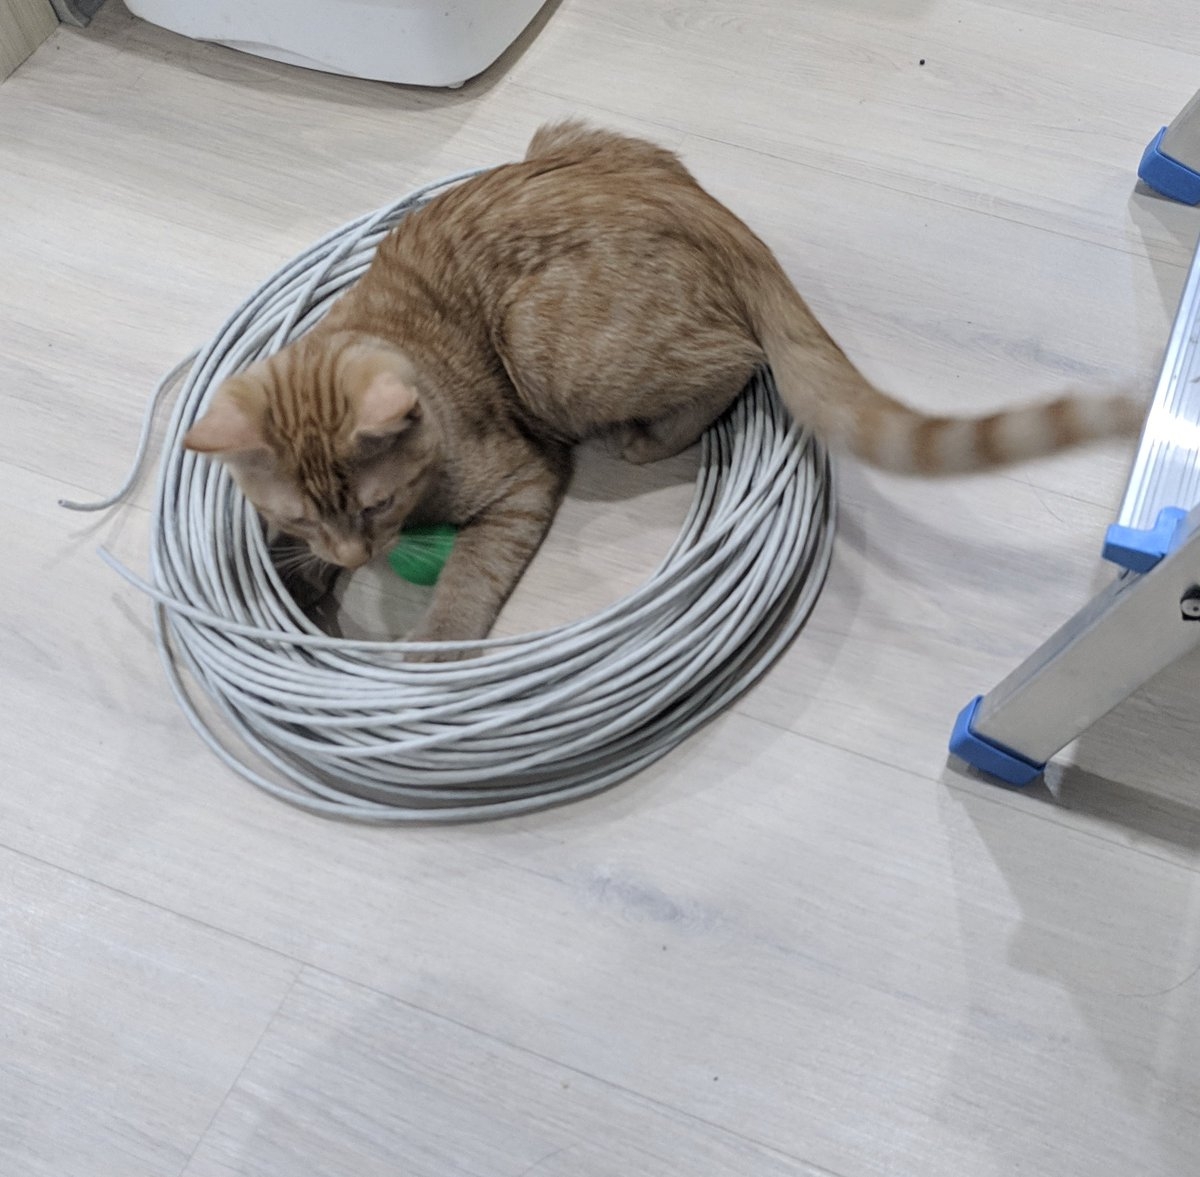 Как защитить компьютерные провода от кота. Если кот стал метить в квартире что делать. Какой ниткой перевязать ножки стола чтобы кот вернулся домой. Чтобы кот не метил в доме